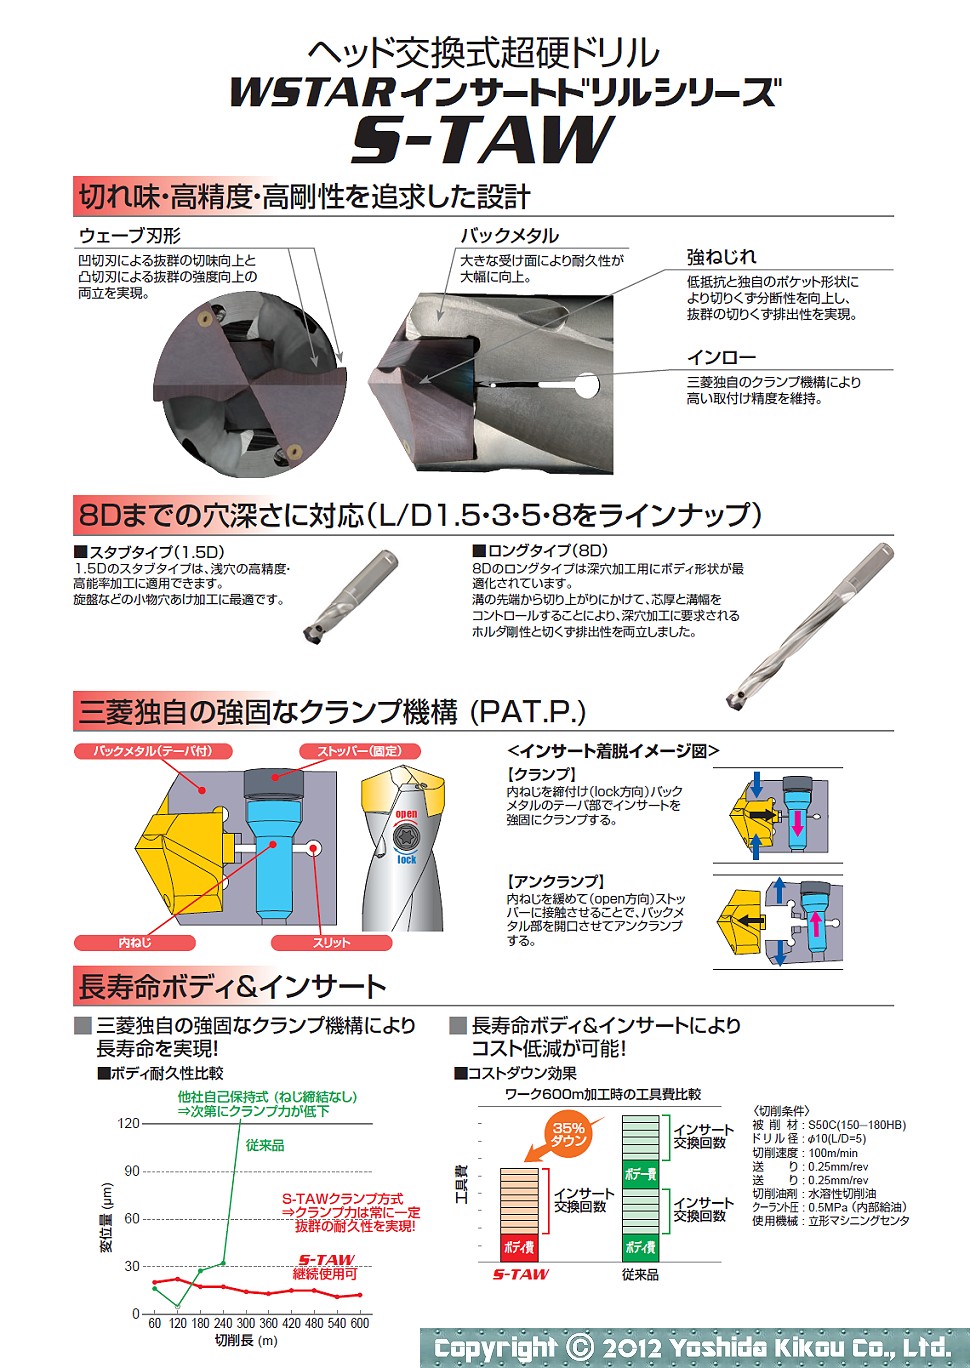 吉田機工株式会社 Yoshida Kikou Co.,Ltd. □ ヘッド交換式超硬ドリル 